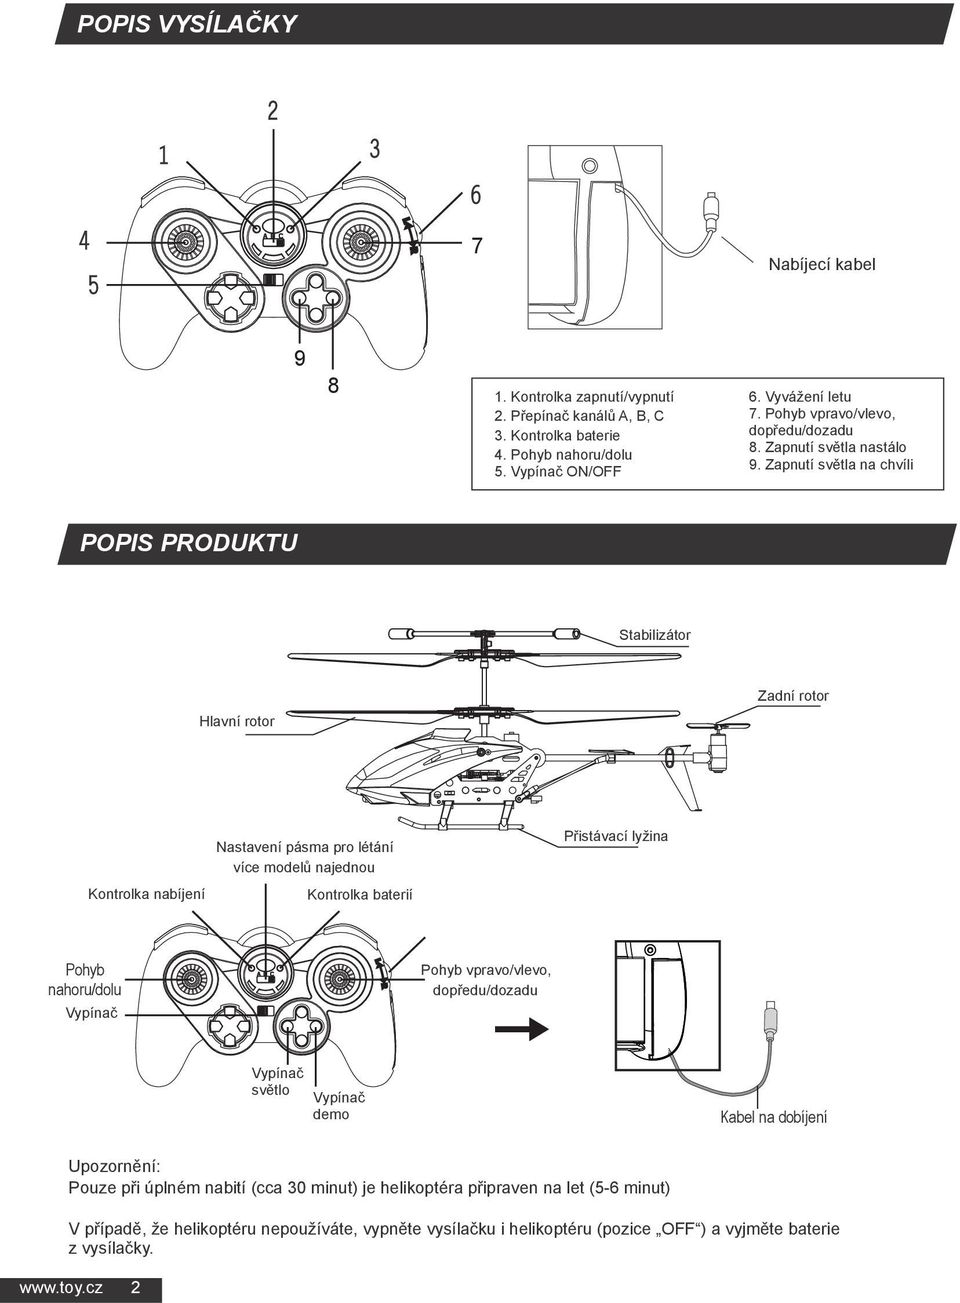 Zapnutí světla na chvíli POPIS PRODUKTU Stabilizátor Zadní rotor Hlavní rotor Kontrolka nabíjení Nastavení pásma pro létání více modelů najednou Kontrolka baterií Přistávací lyžina Pohyb